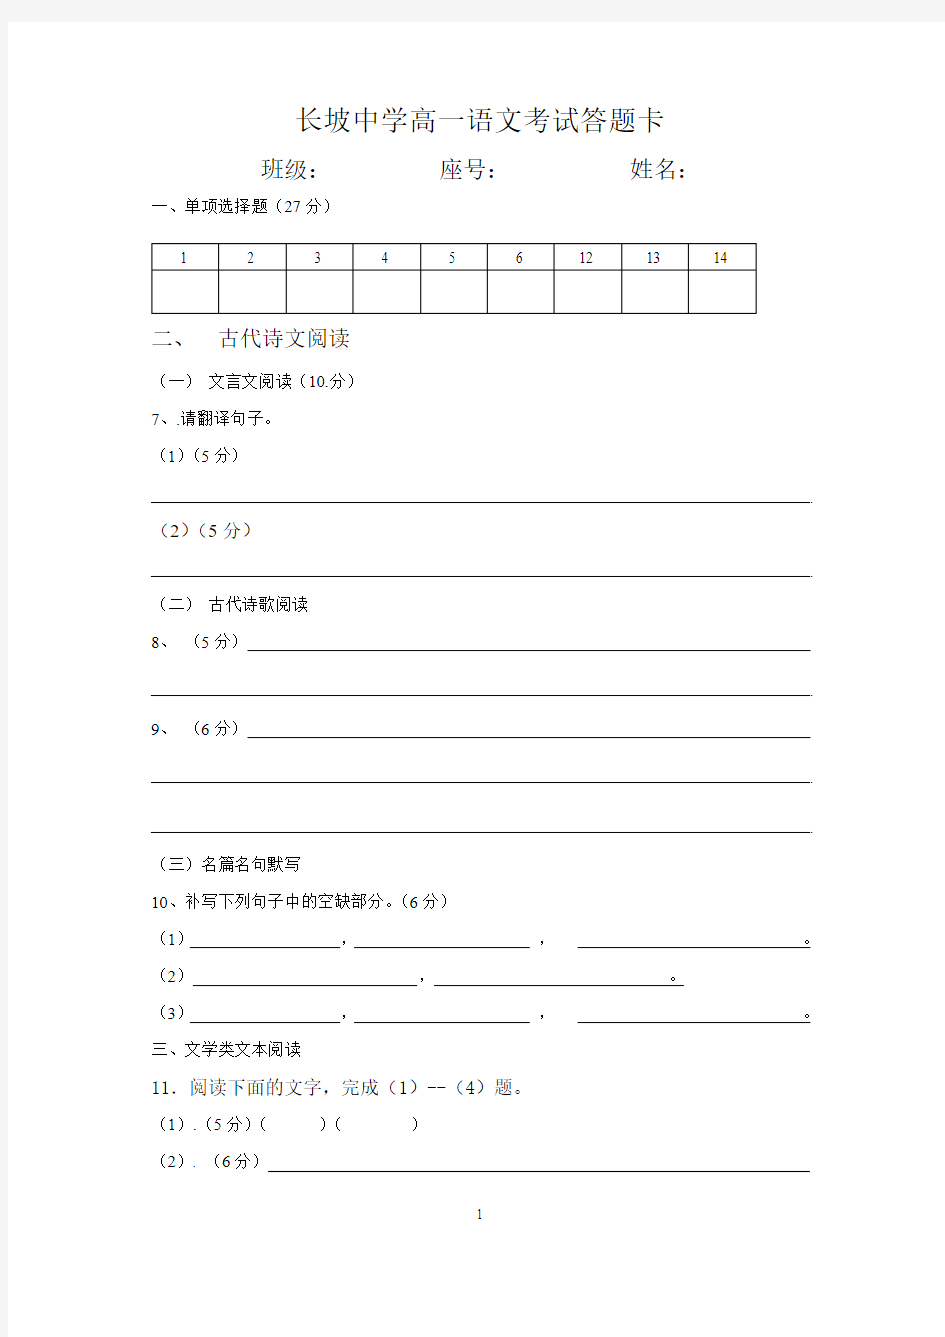 长坡中学高三语文考试答题卡